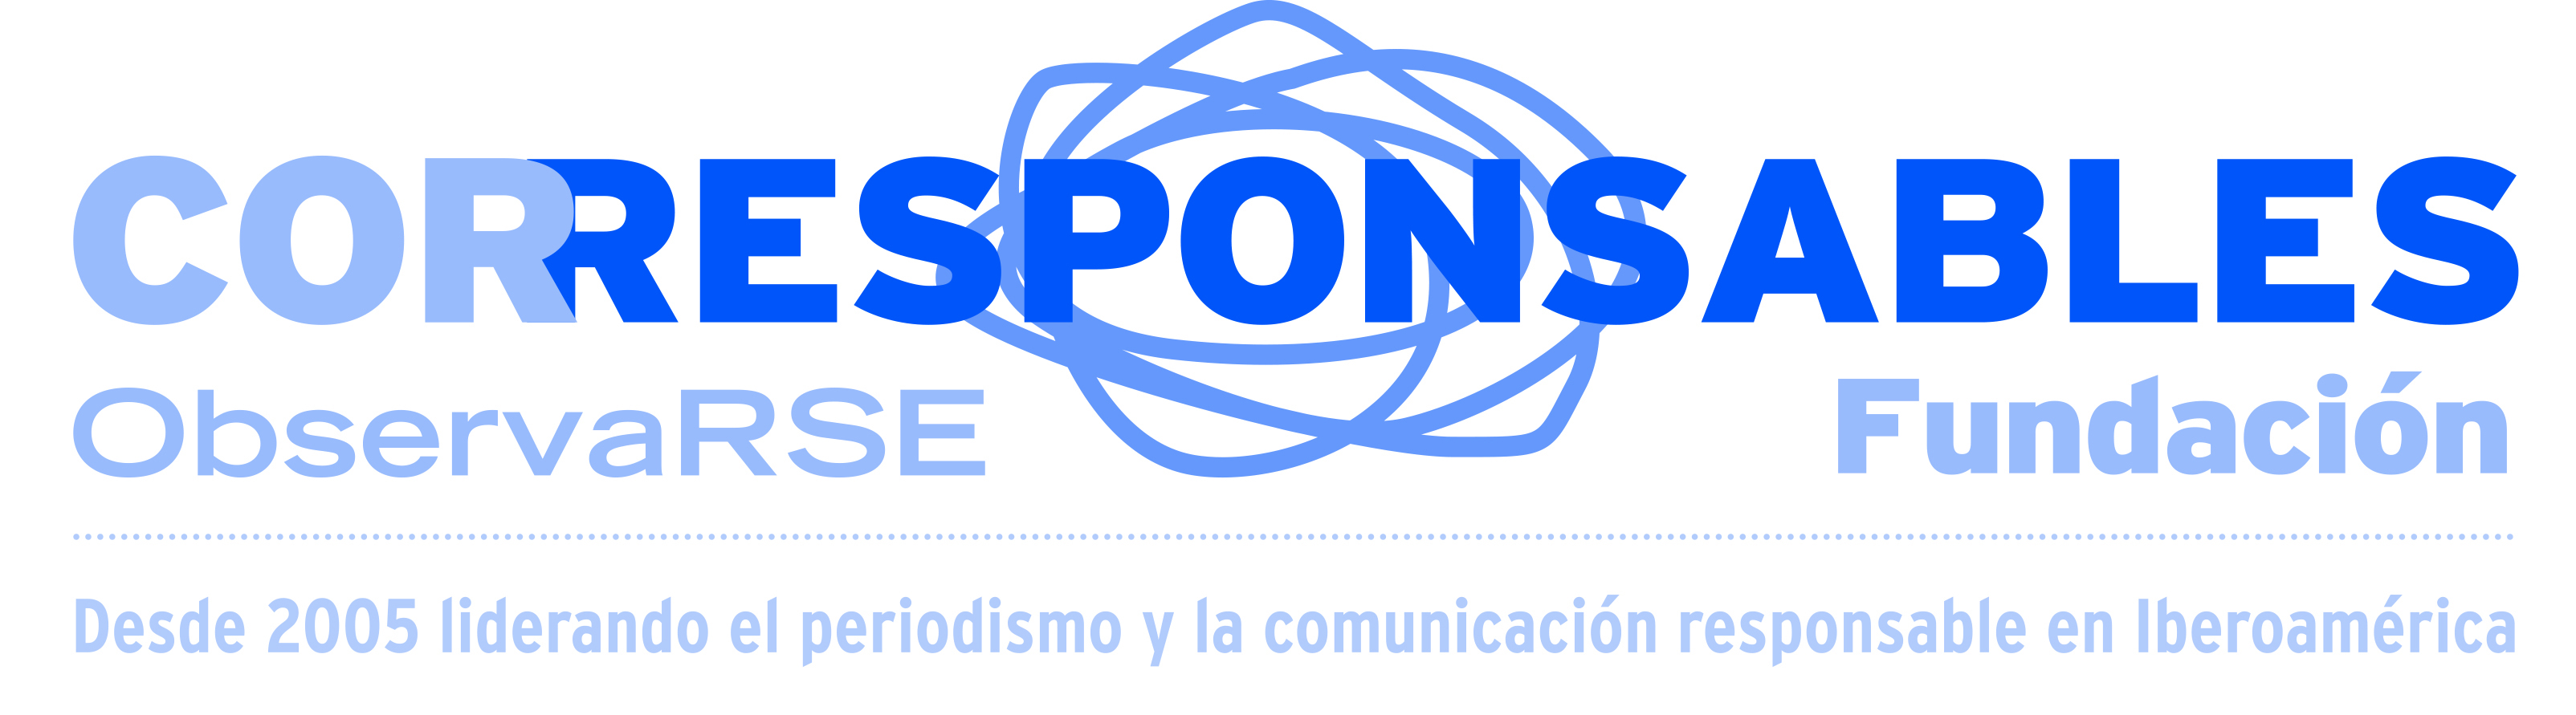 CORRESPONSABLES_logo_positivo